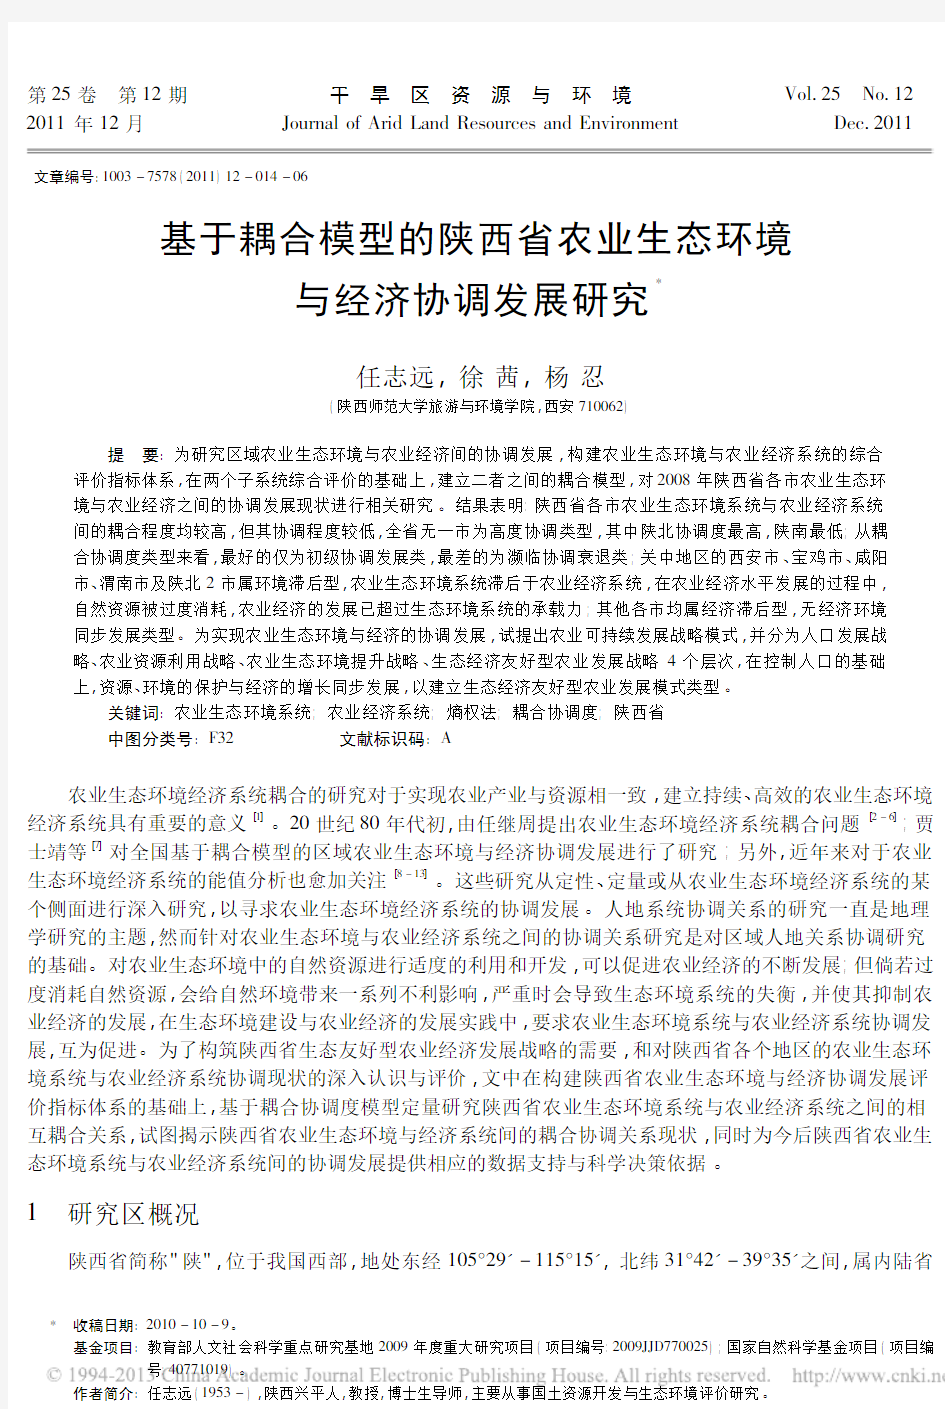 基于耦合模型的陕西省农业生态环境与经济协调发展研究_任志远